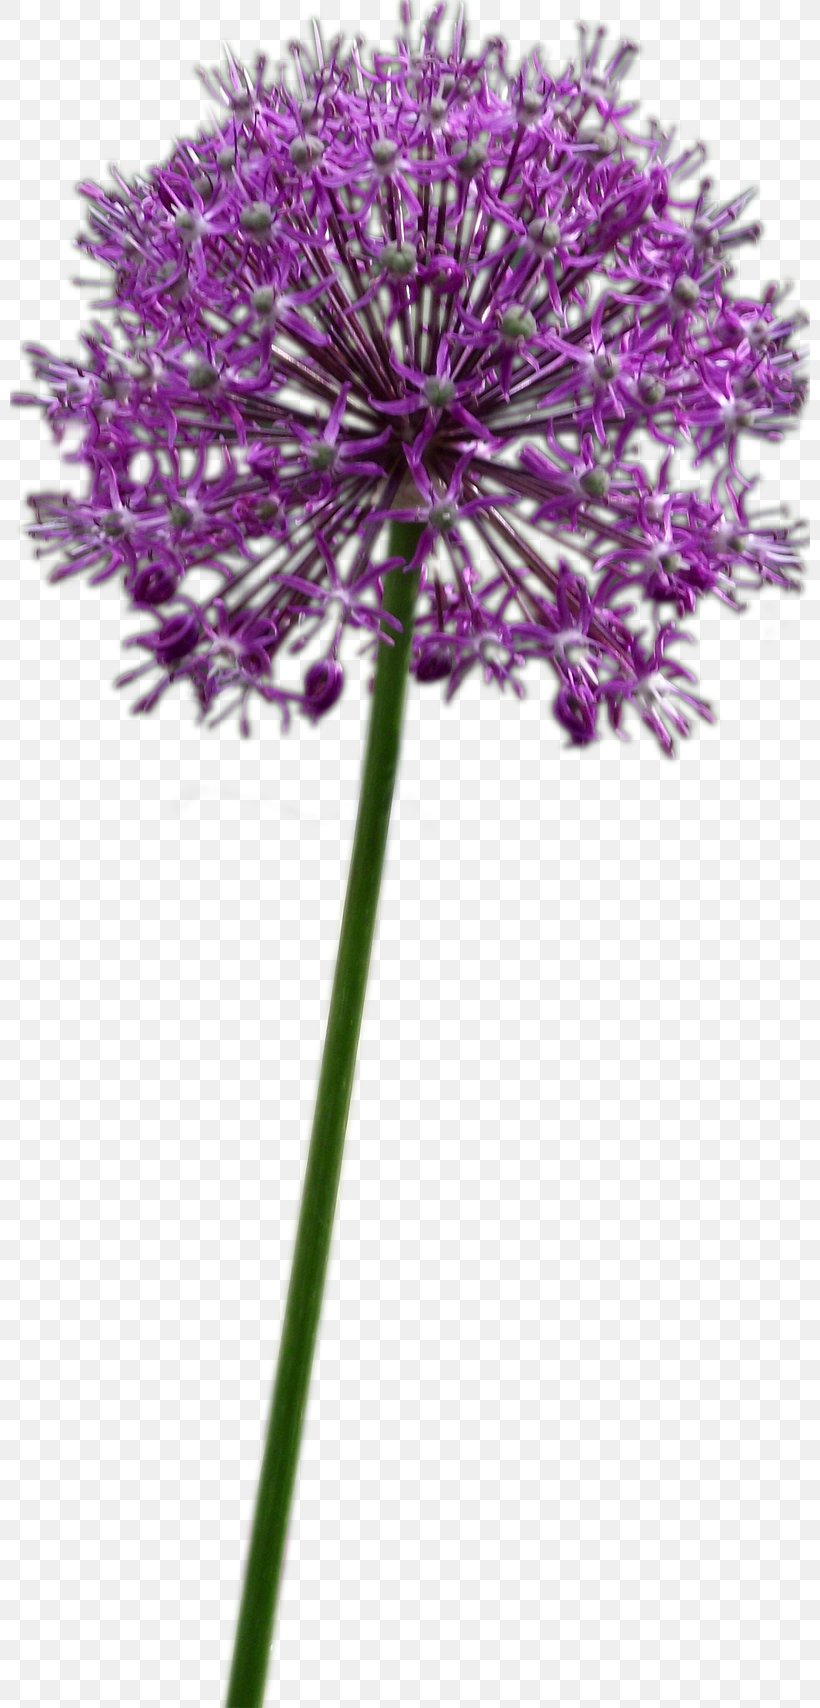 Allium Fistulosum Flower Chives Onion Allium Altissimum, PNG, 800x1708px, Allium Fistulosum, Allium, Allium Altissimum, Bulb, Chives Download Free